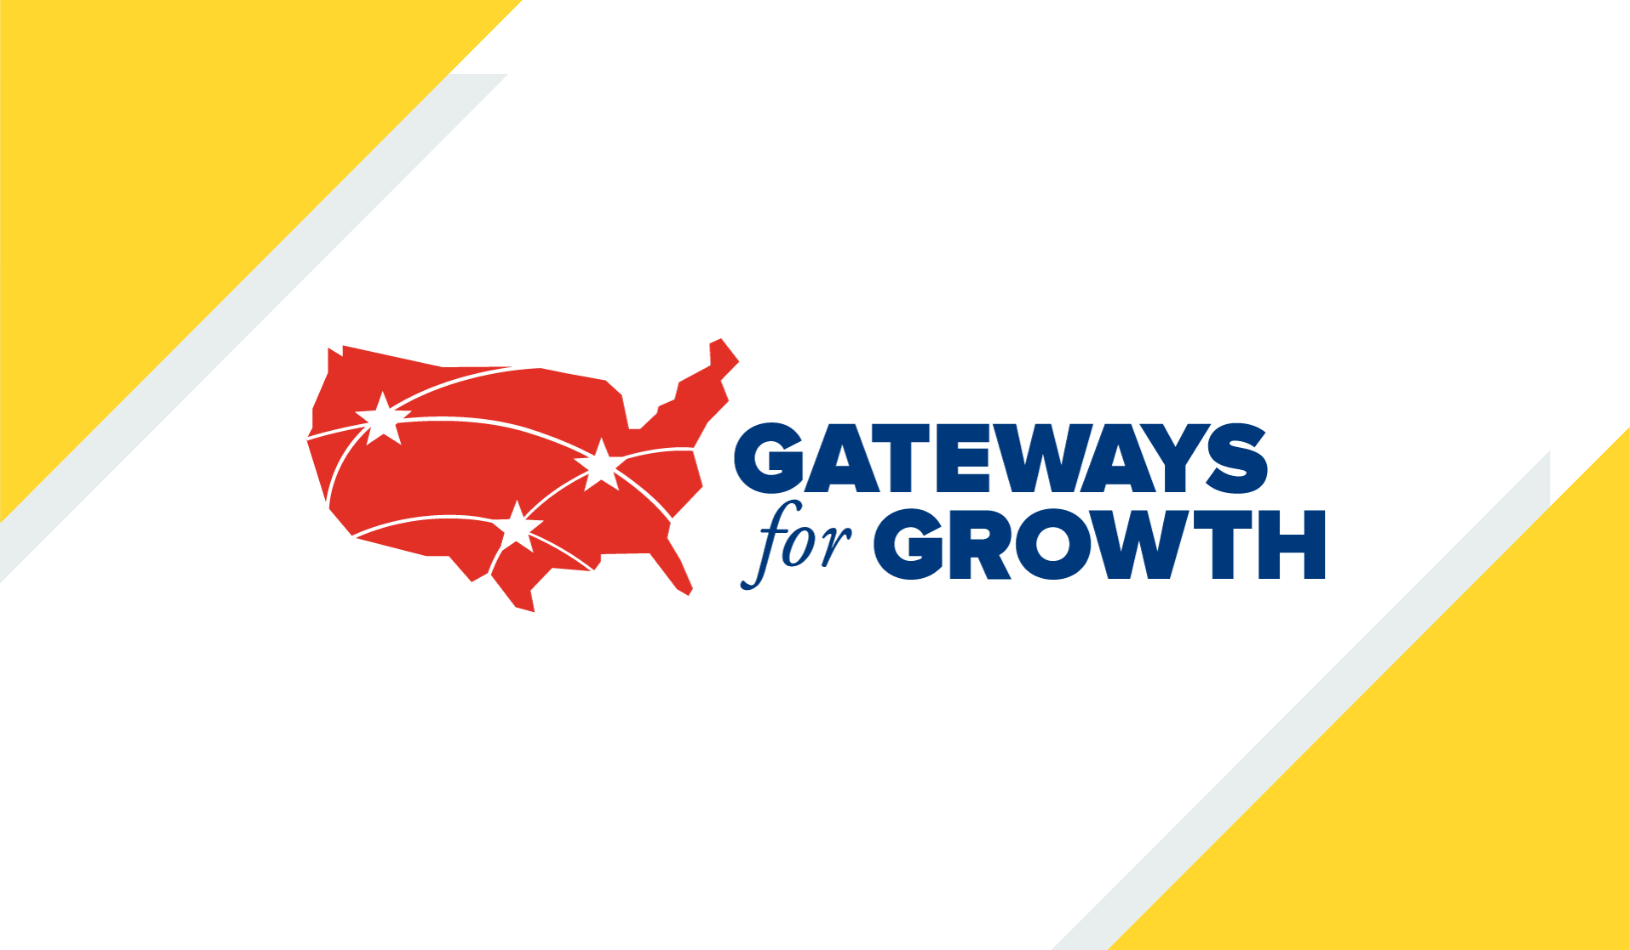 Gateways for Growth